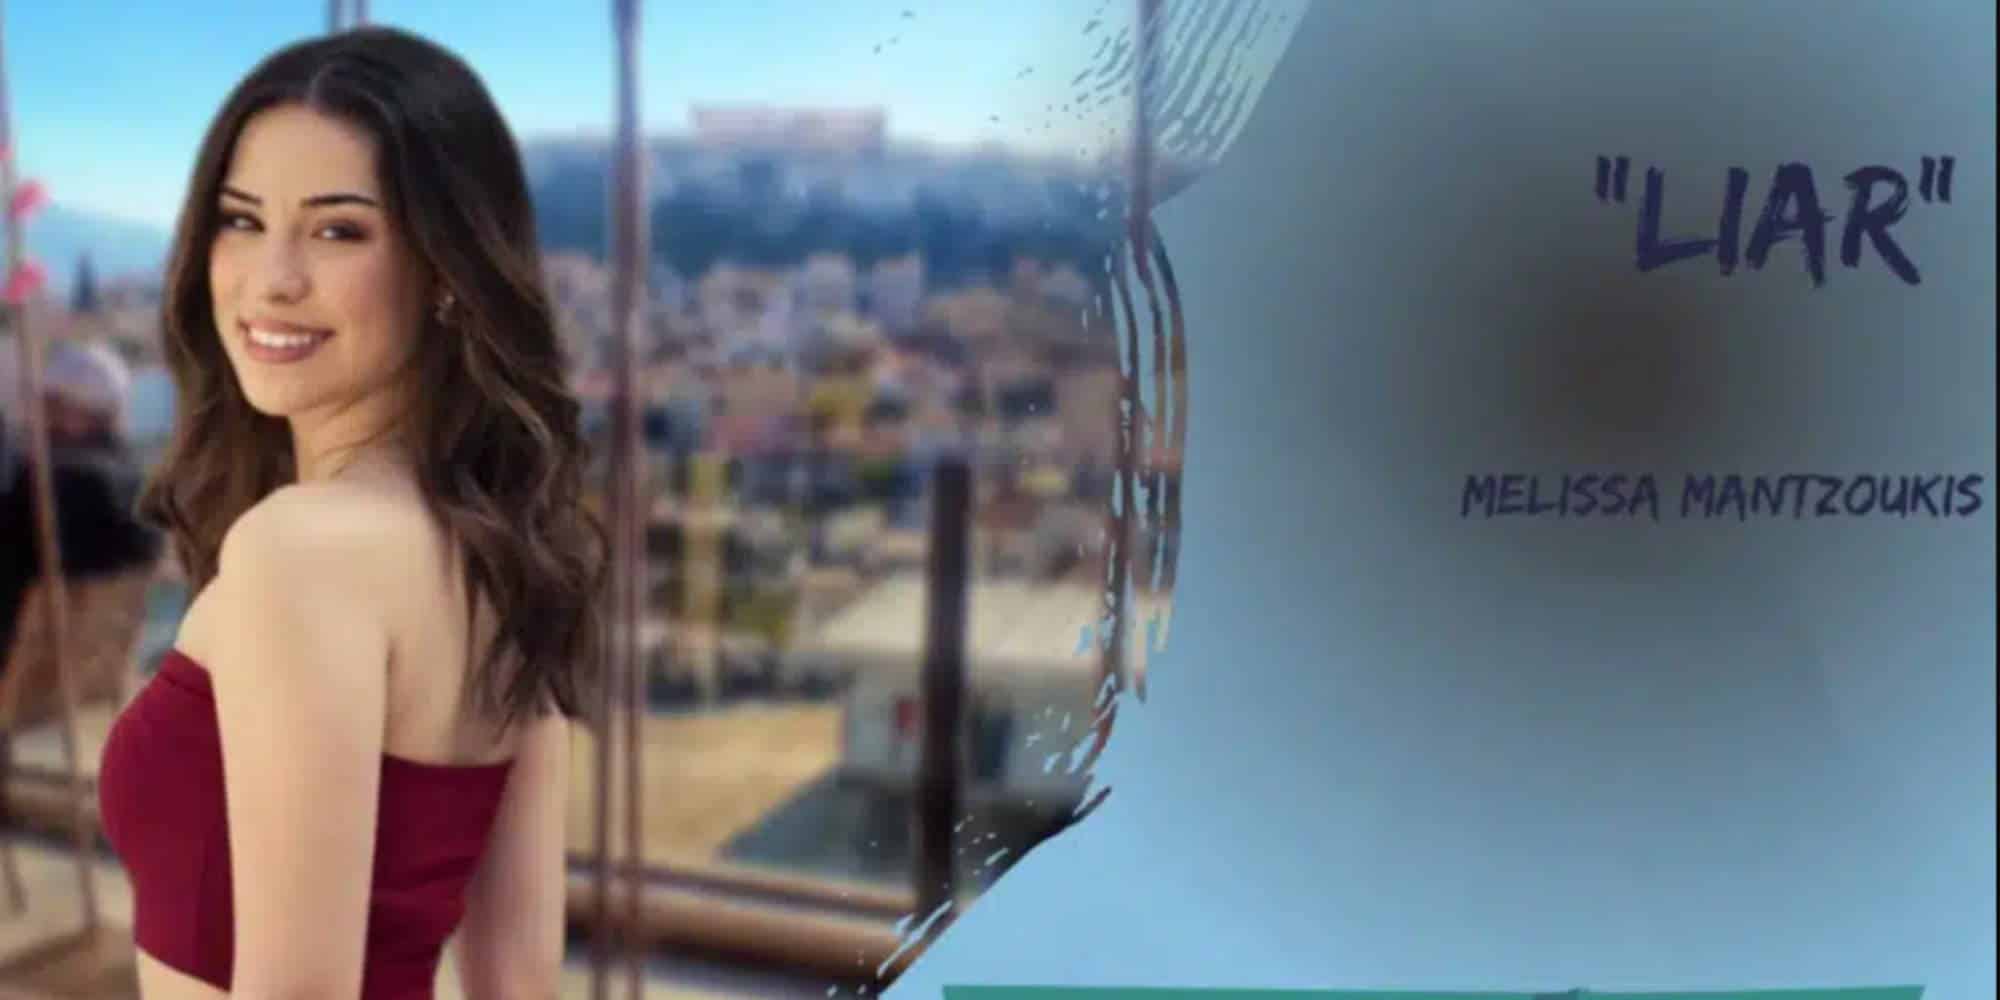 Η Μελίσσα Μαντζούκη που διεκδίκησε το εισιτήριο για τη Eurovision με την Ελλάδα